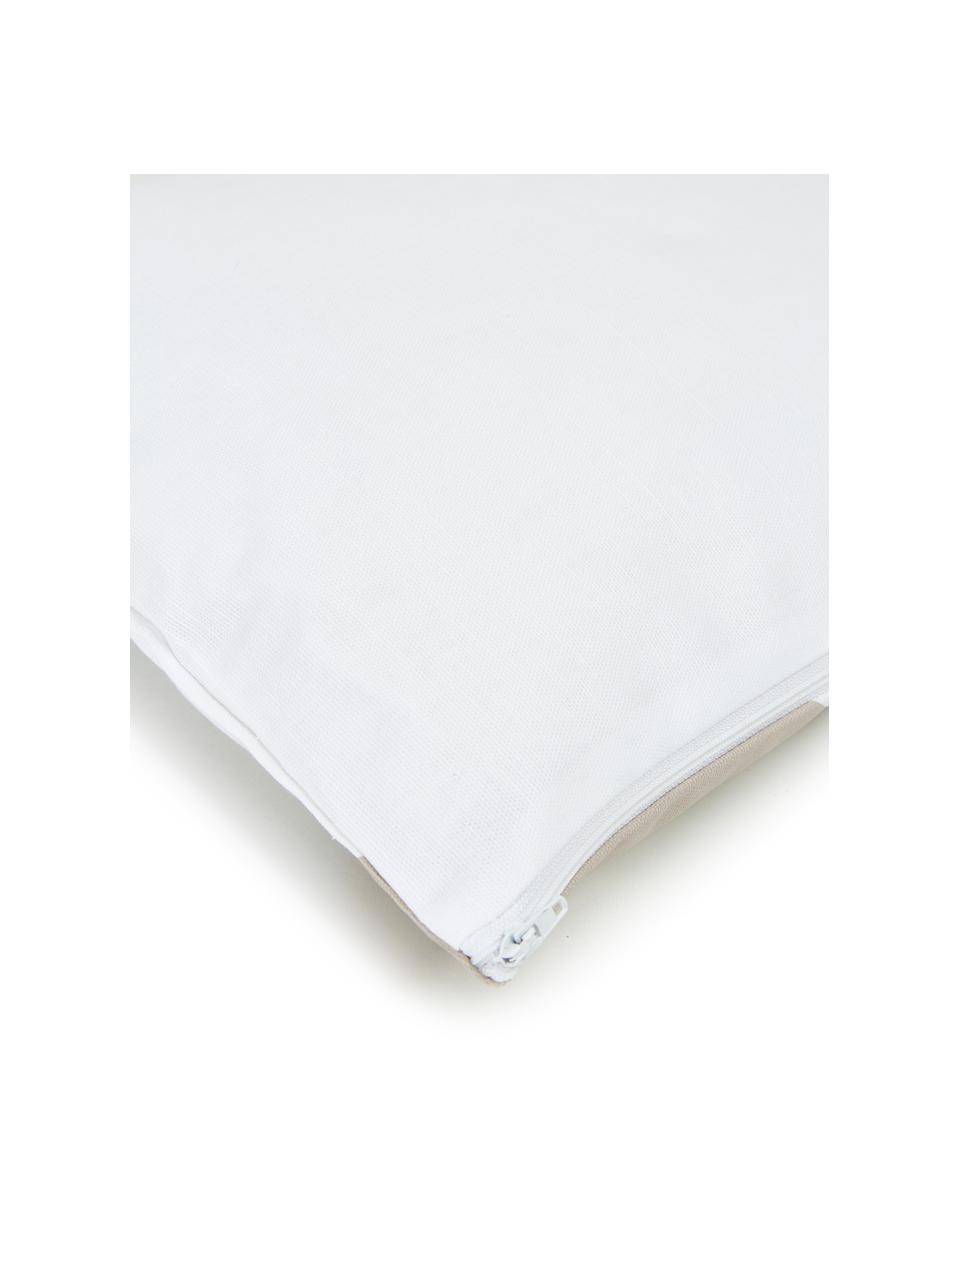 Gestreifte Kissenhülle Ren in Taupe/Weiß, 100% Baumwolle, Weiß, Beige, B 30 x L 50 cm